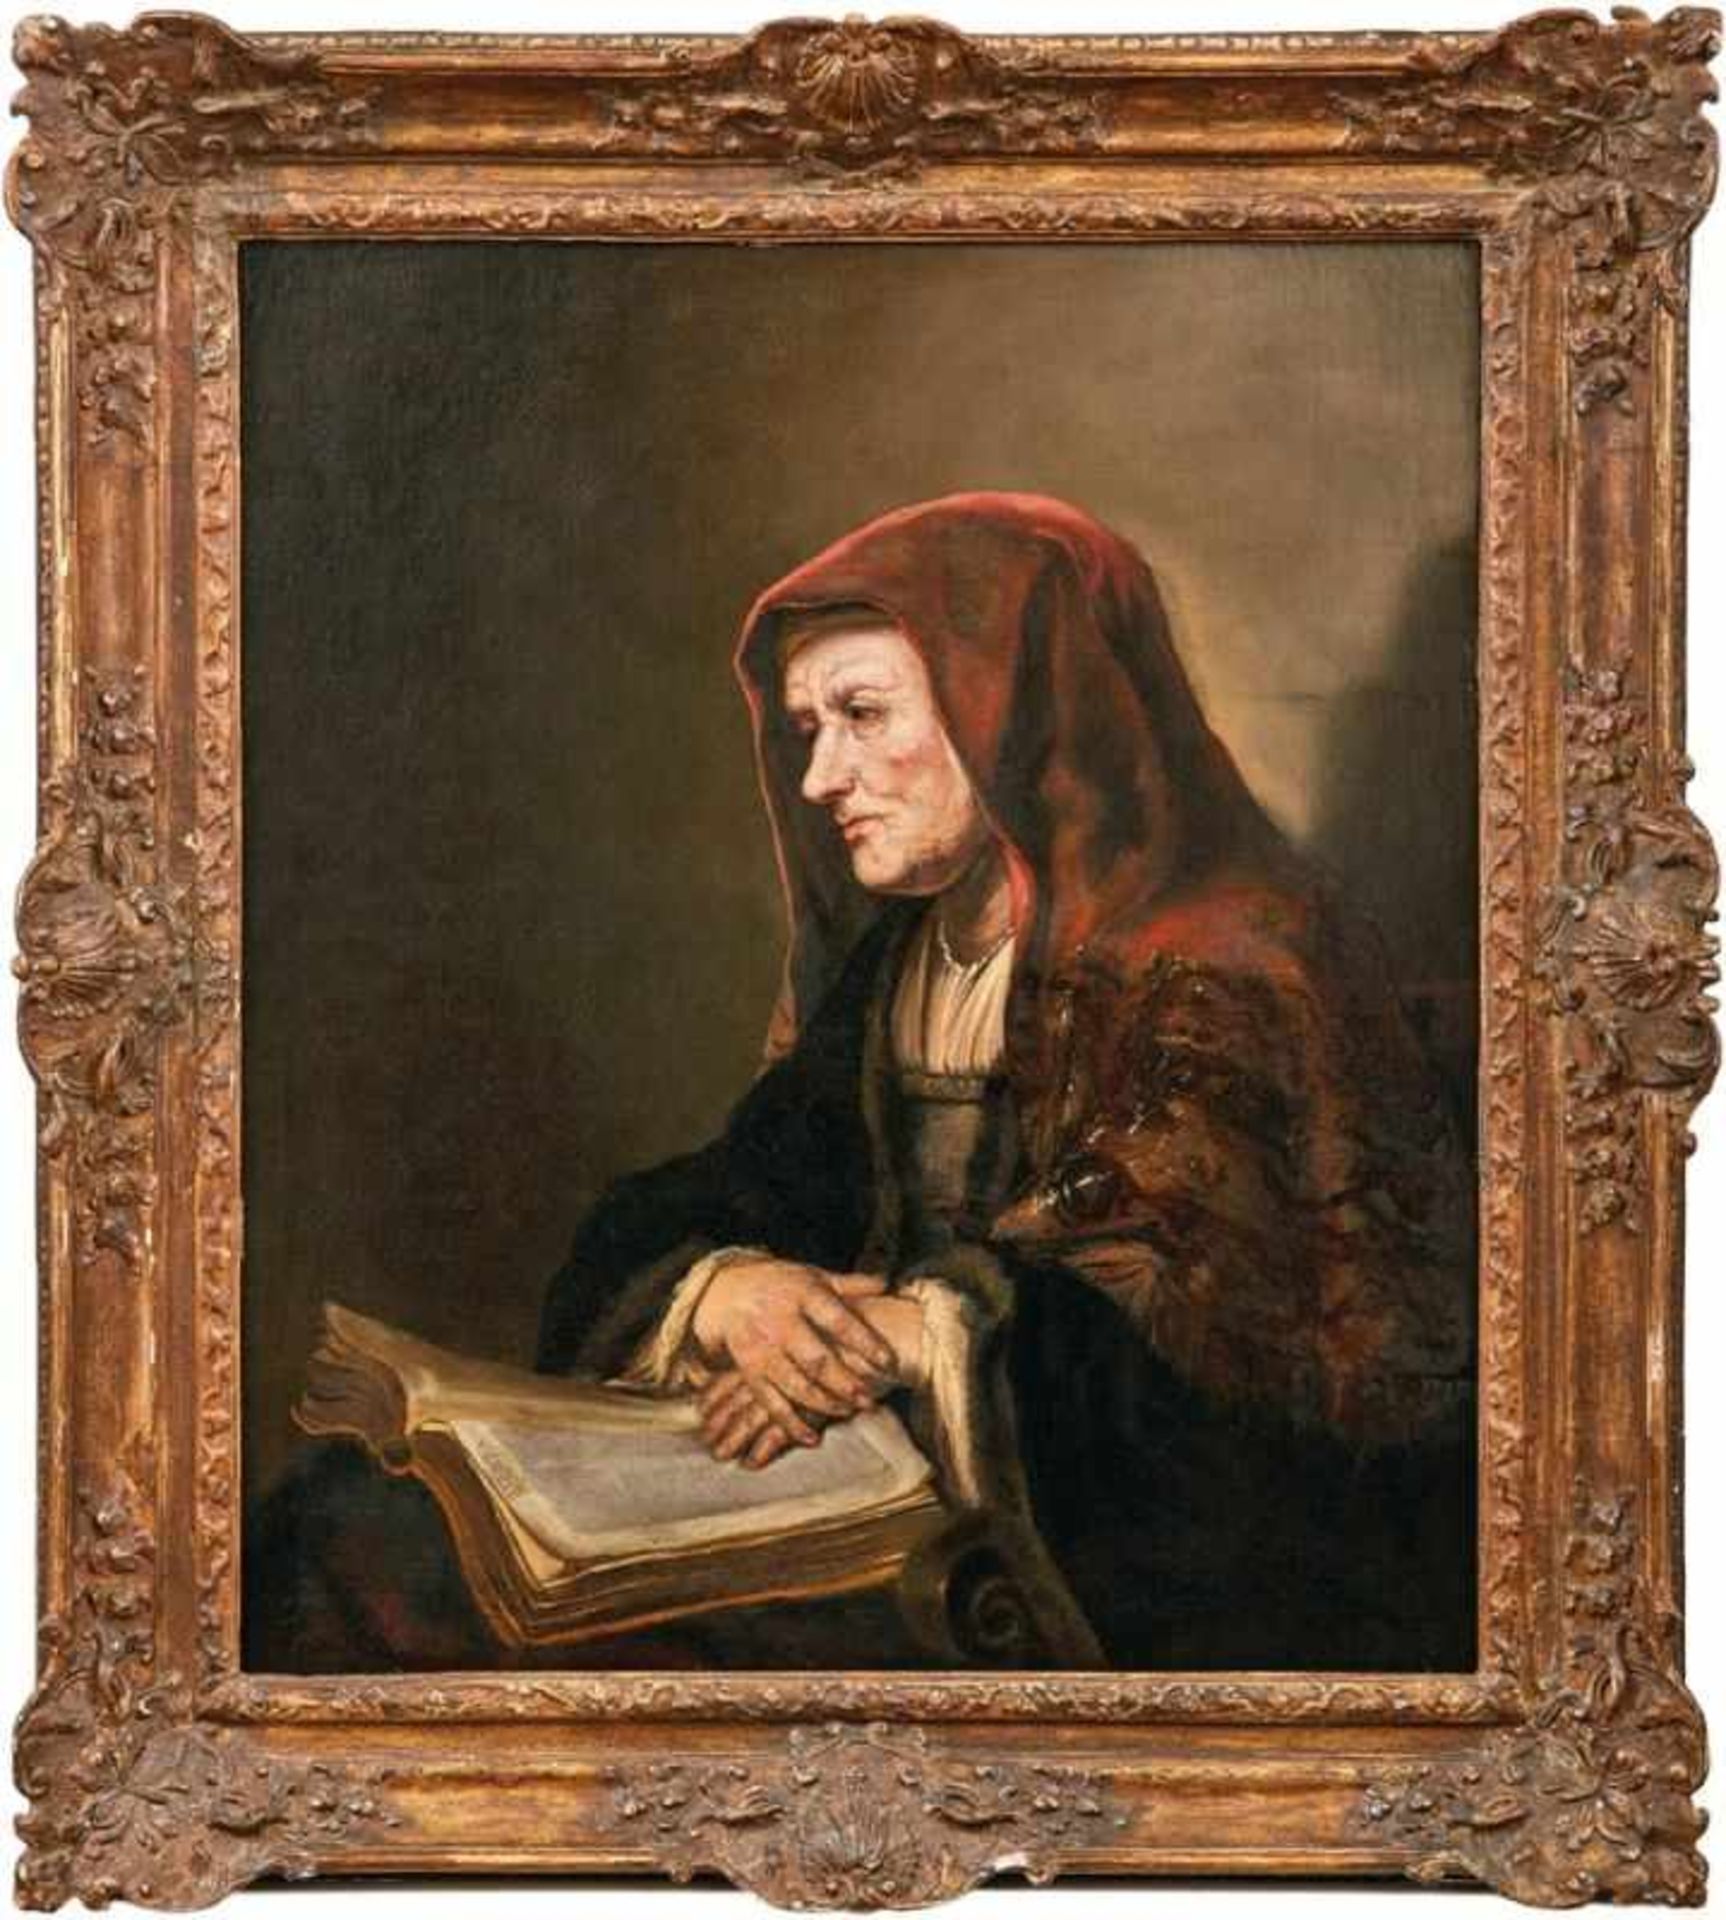 Rembrandt, Harmensz van Rijn - School of thePortrait of an old woman reading the Bible(Leiden 1606-